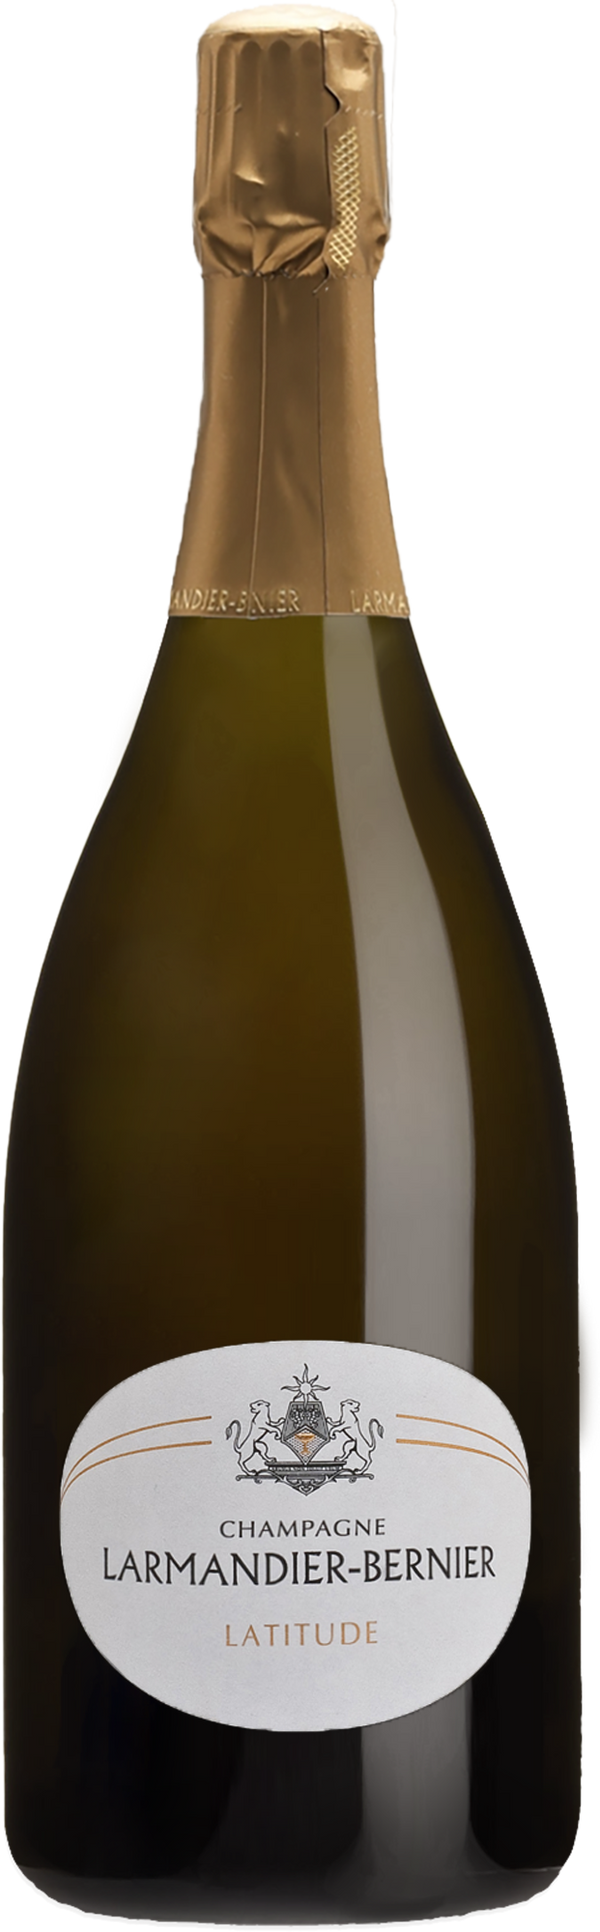 Champagne Larmandier-Bernier Latitude Blanc de Blancs NV (Base 18. Disg. Sep 23)